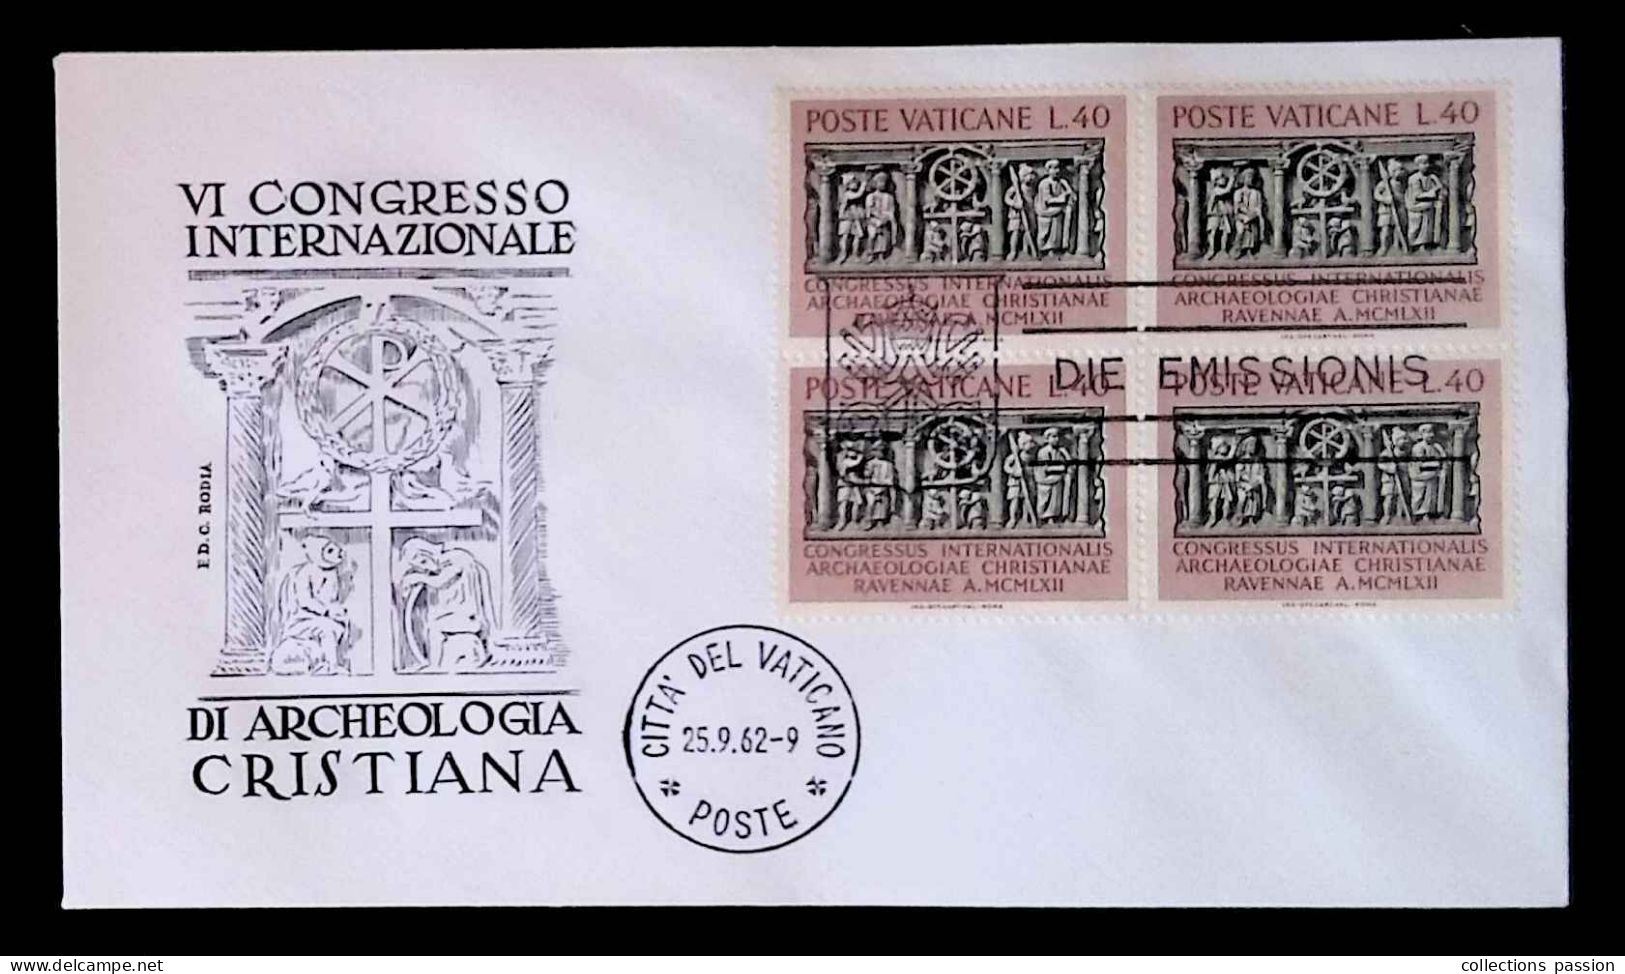 CL, FDC, Premier Jour, Cita Del Vaticano, Poste, 25.9.62, 1962, Die Emissionis, VI Congresso Di Archeologia Cristiana - FDC